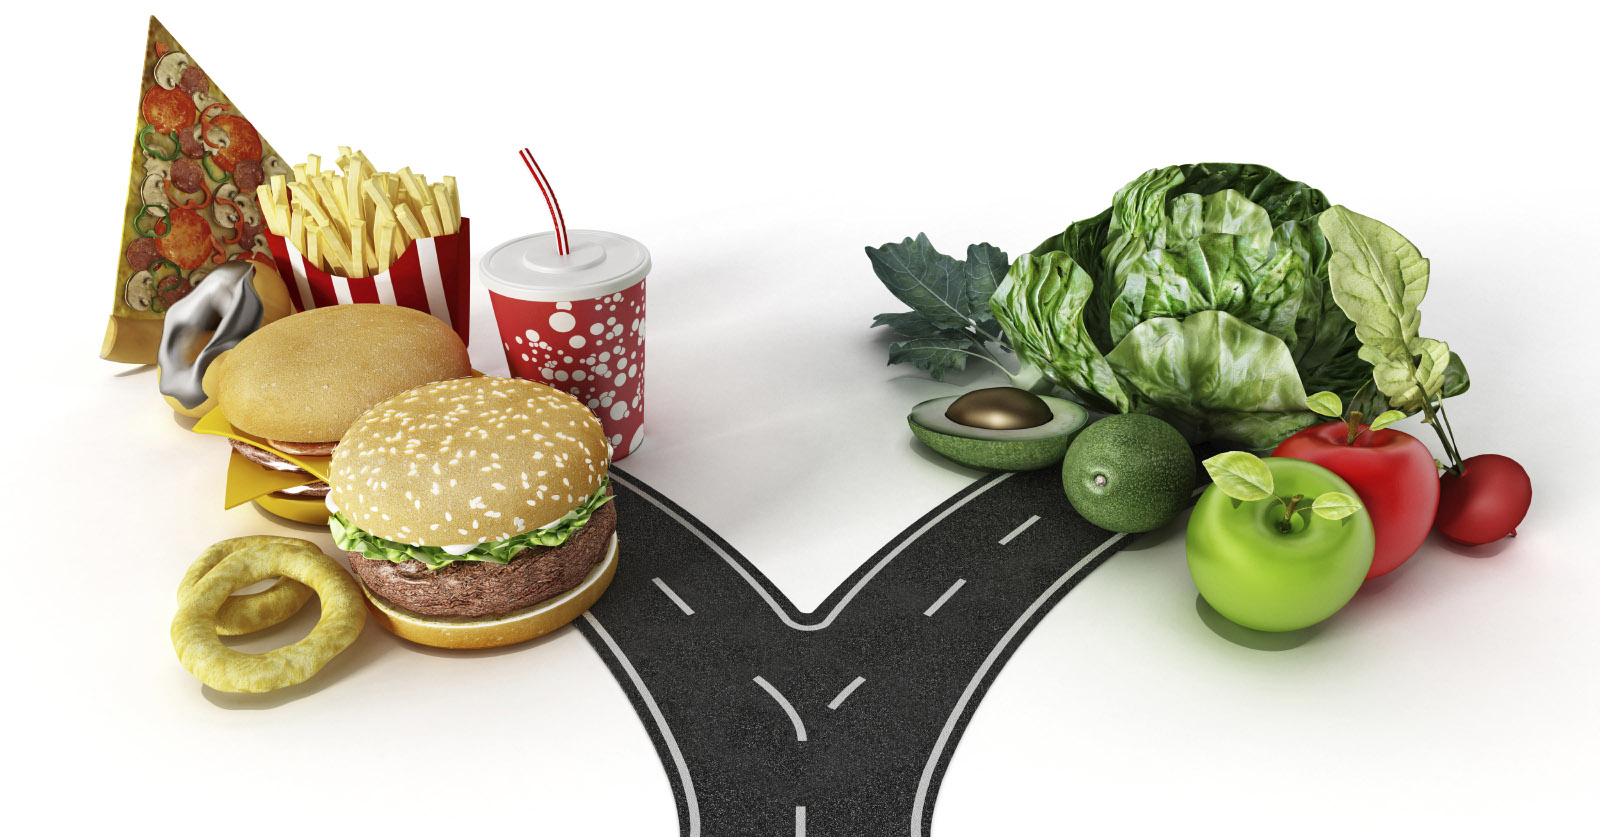 3136-junk-food-vs-healthy-food.jpg